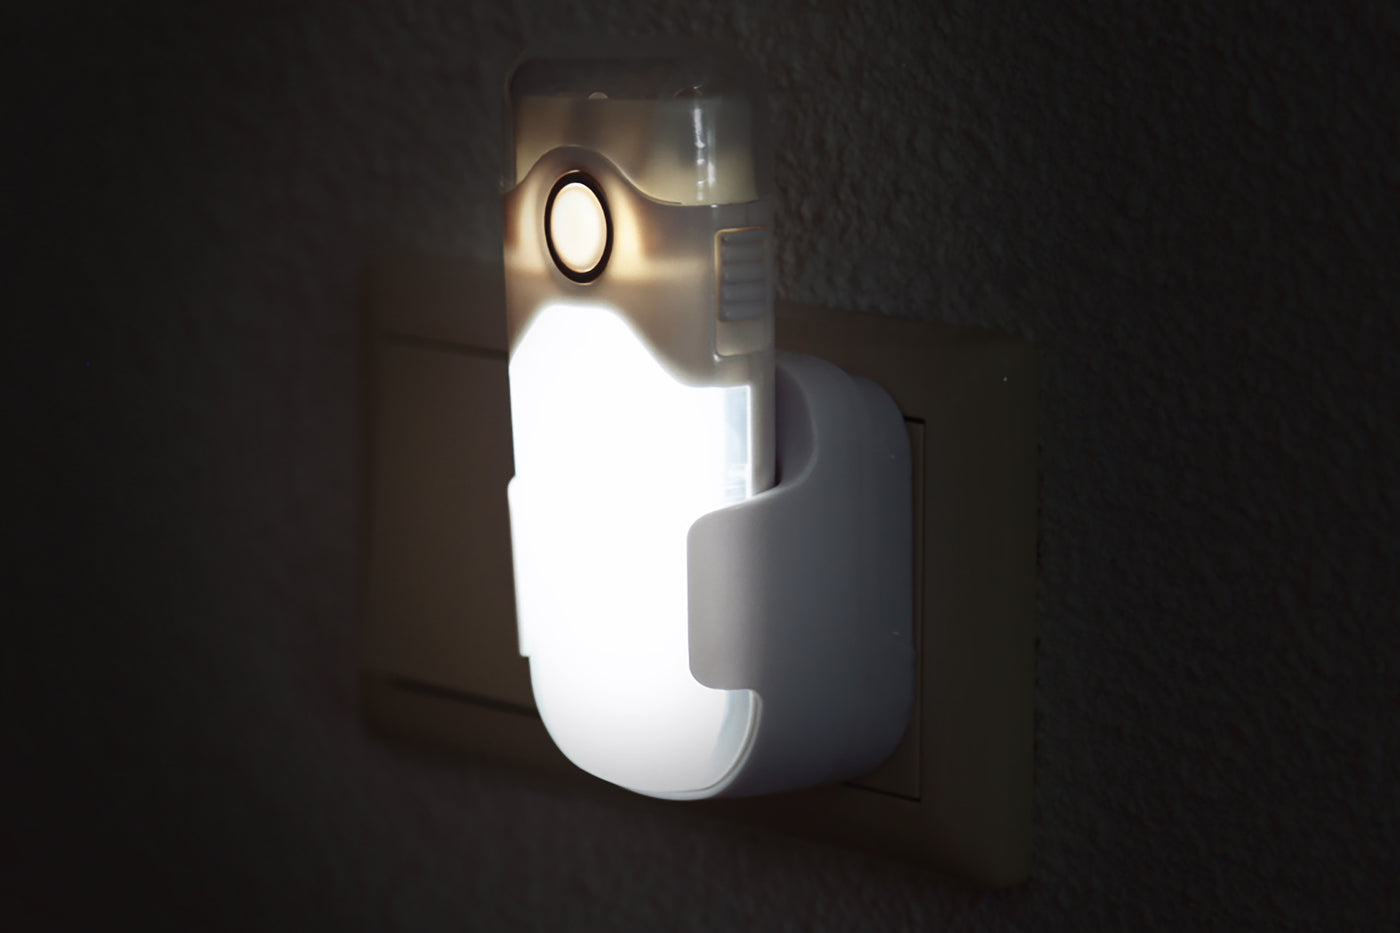 Alecto ATL-80 - Lampe de poche LED rechargeable / veilleuse LED automatique, blanc